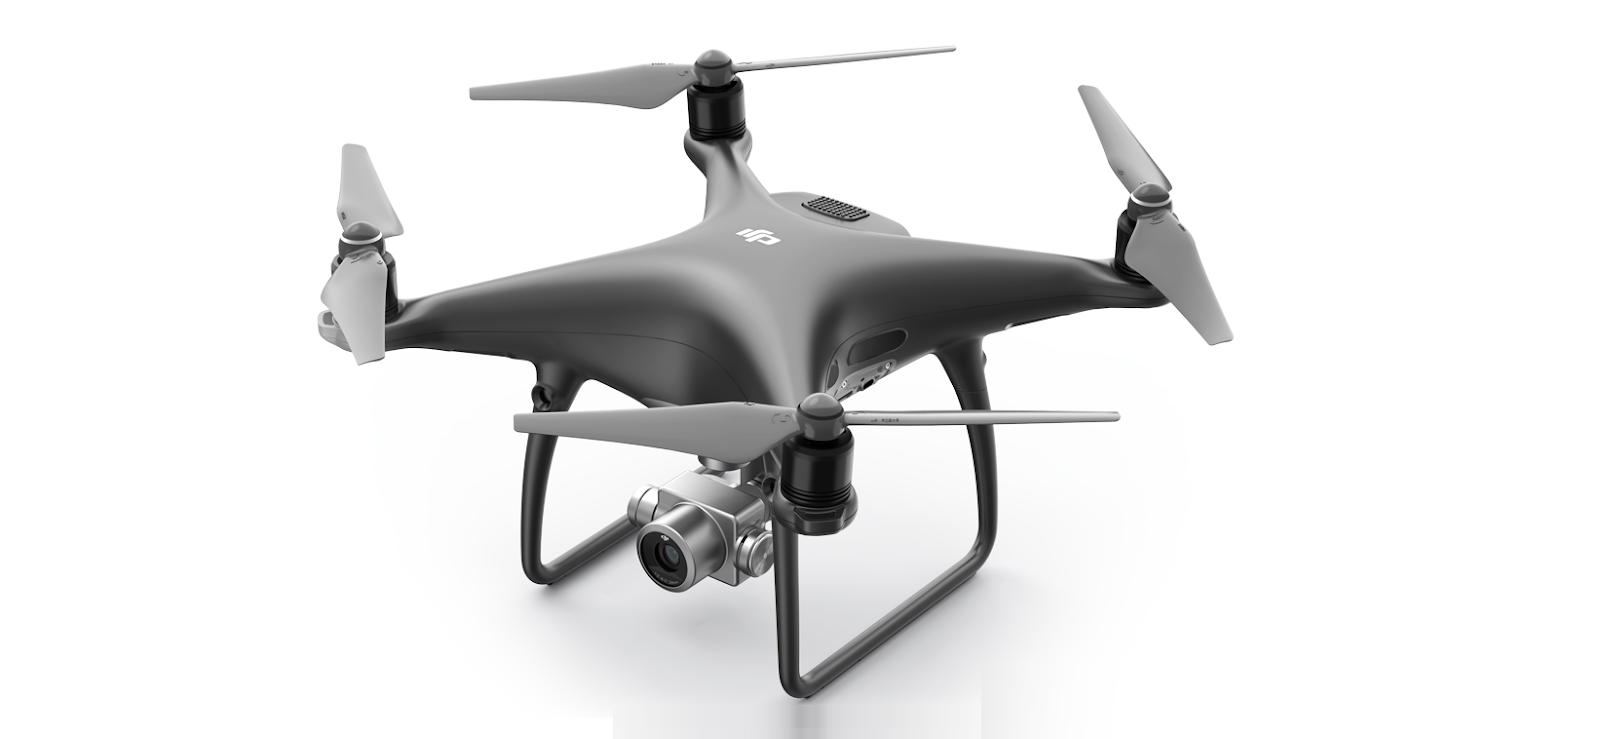 أفضل طائرة بدون طيار (درون-Drone) للمصورين تصوير جوي 2020